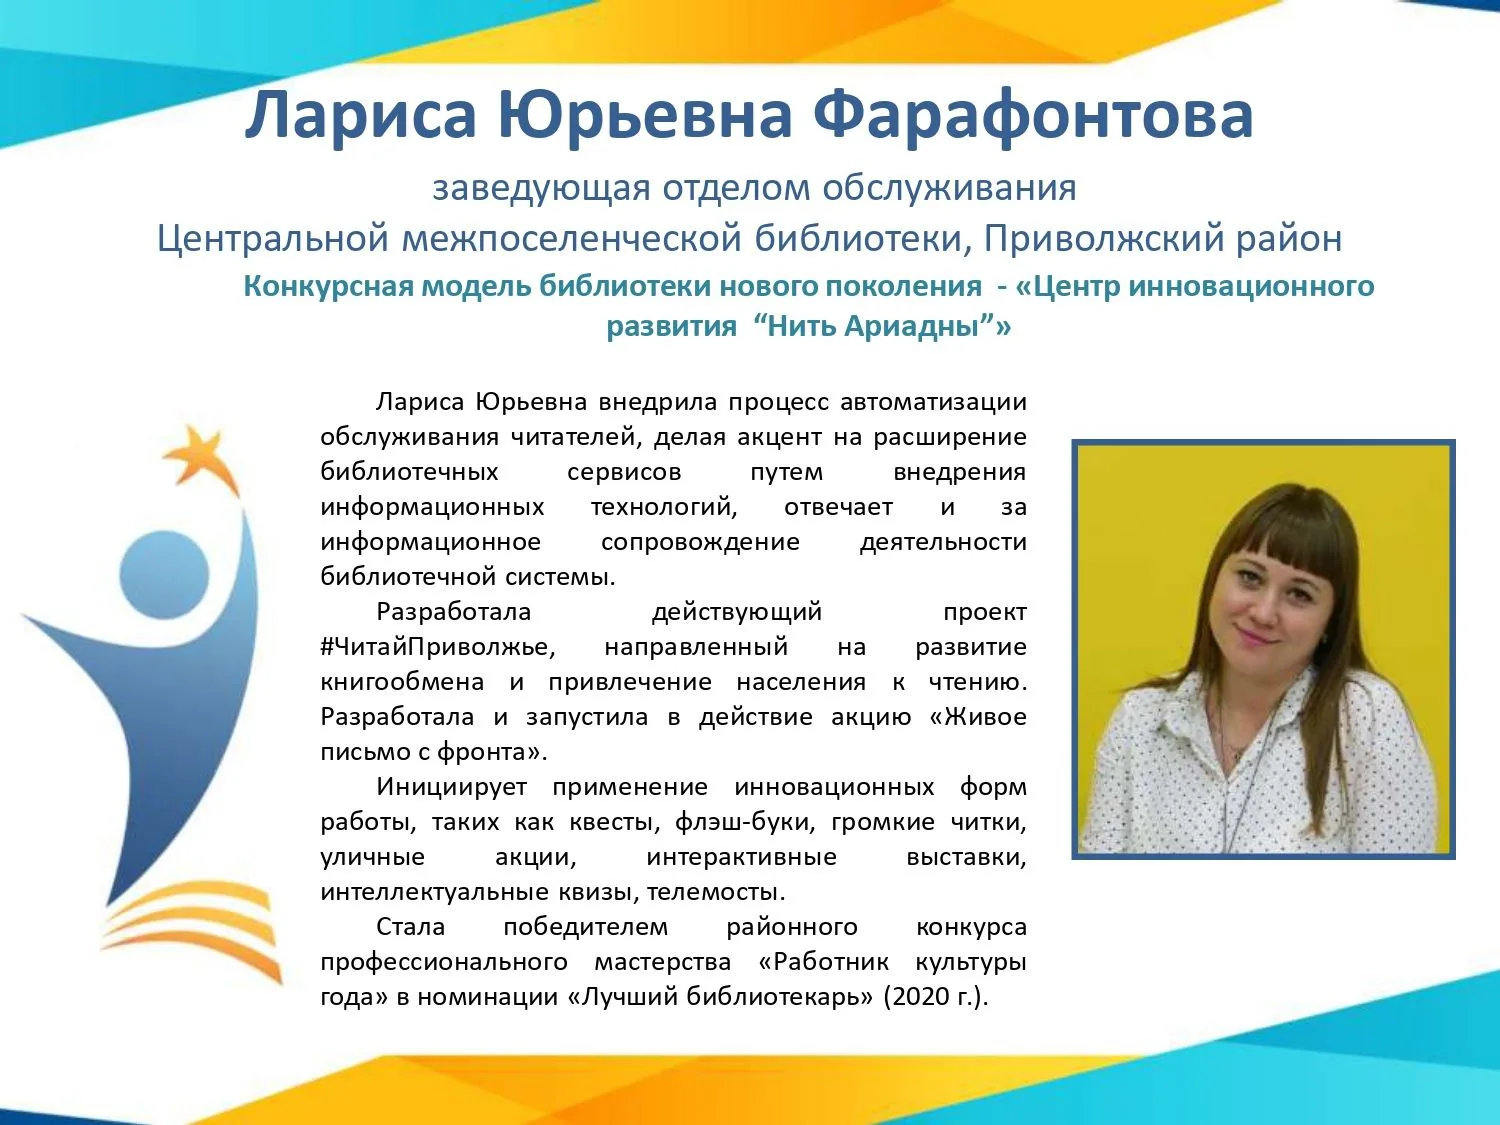 Фарафонтова Лариса Юрьевна, карточка «Профессиональное признание — 2020»